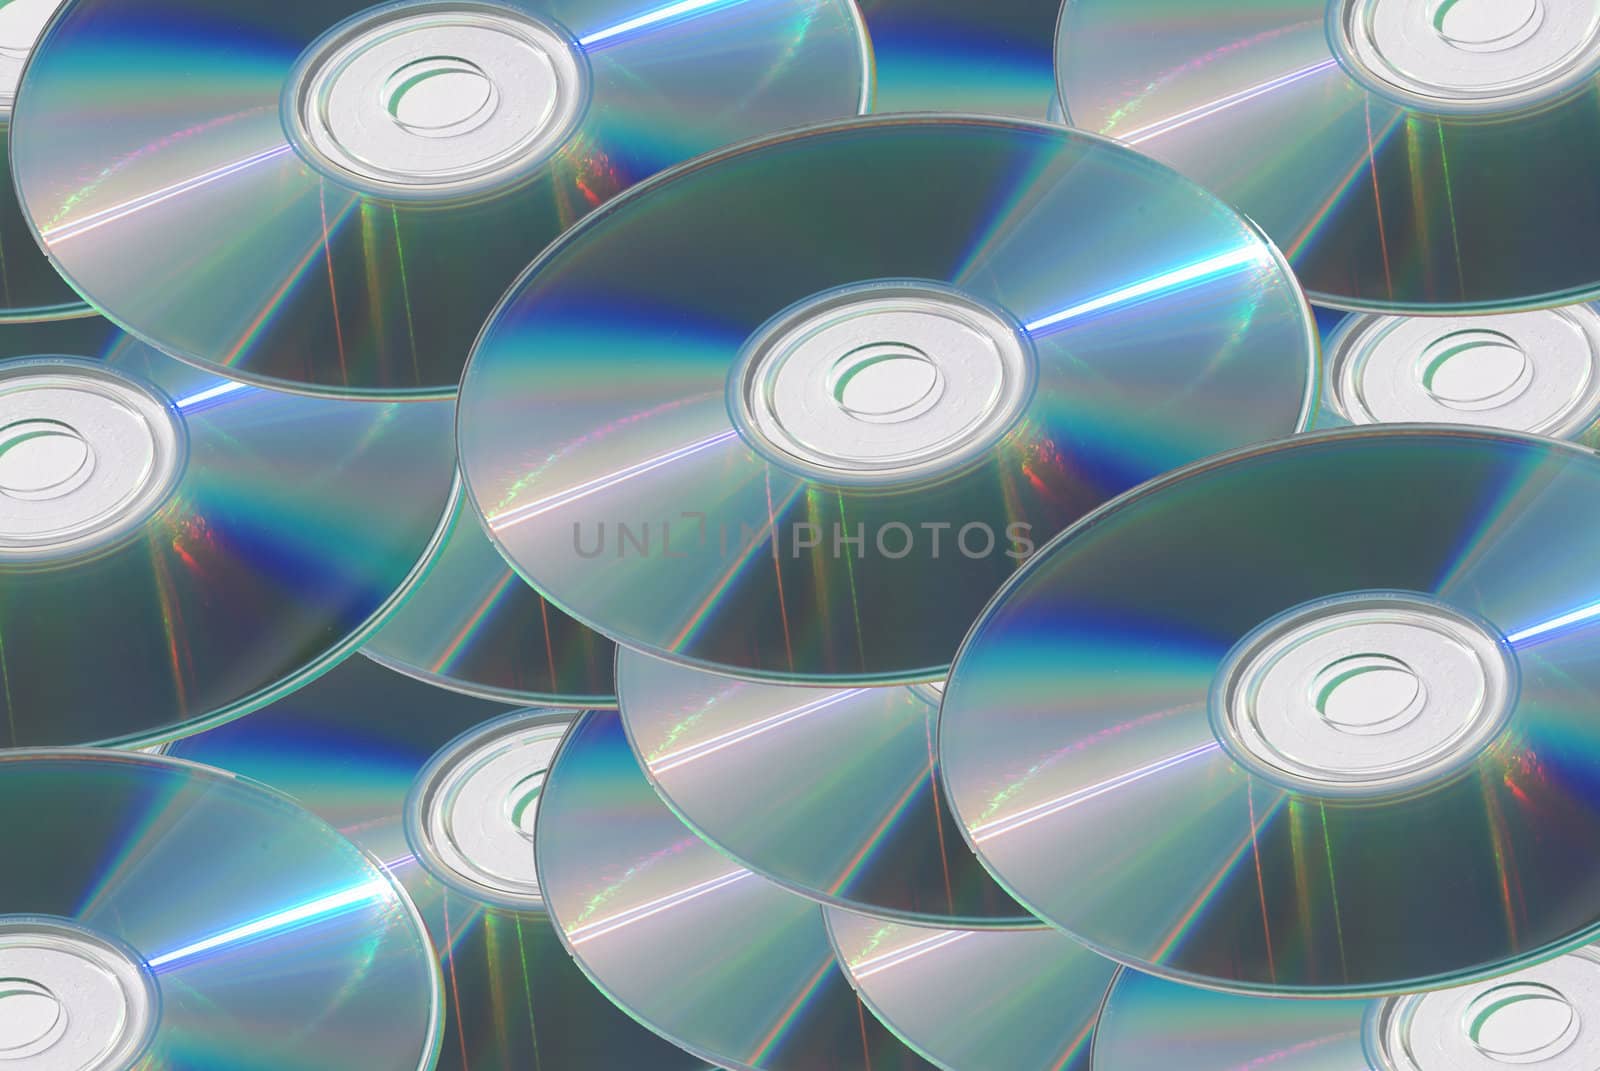 DVD discs